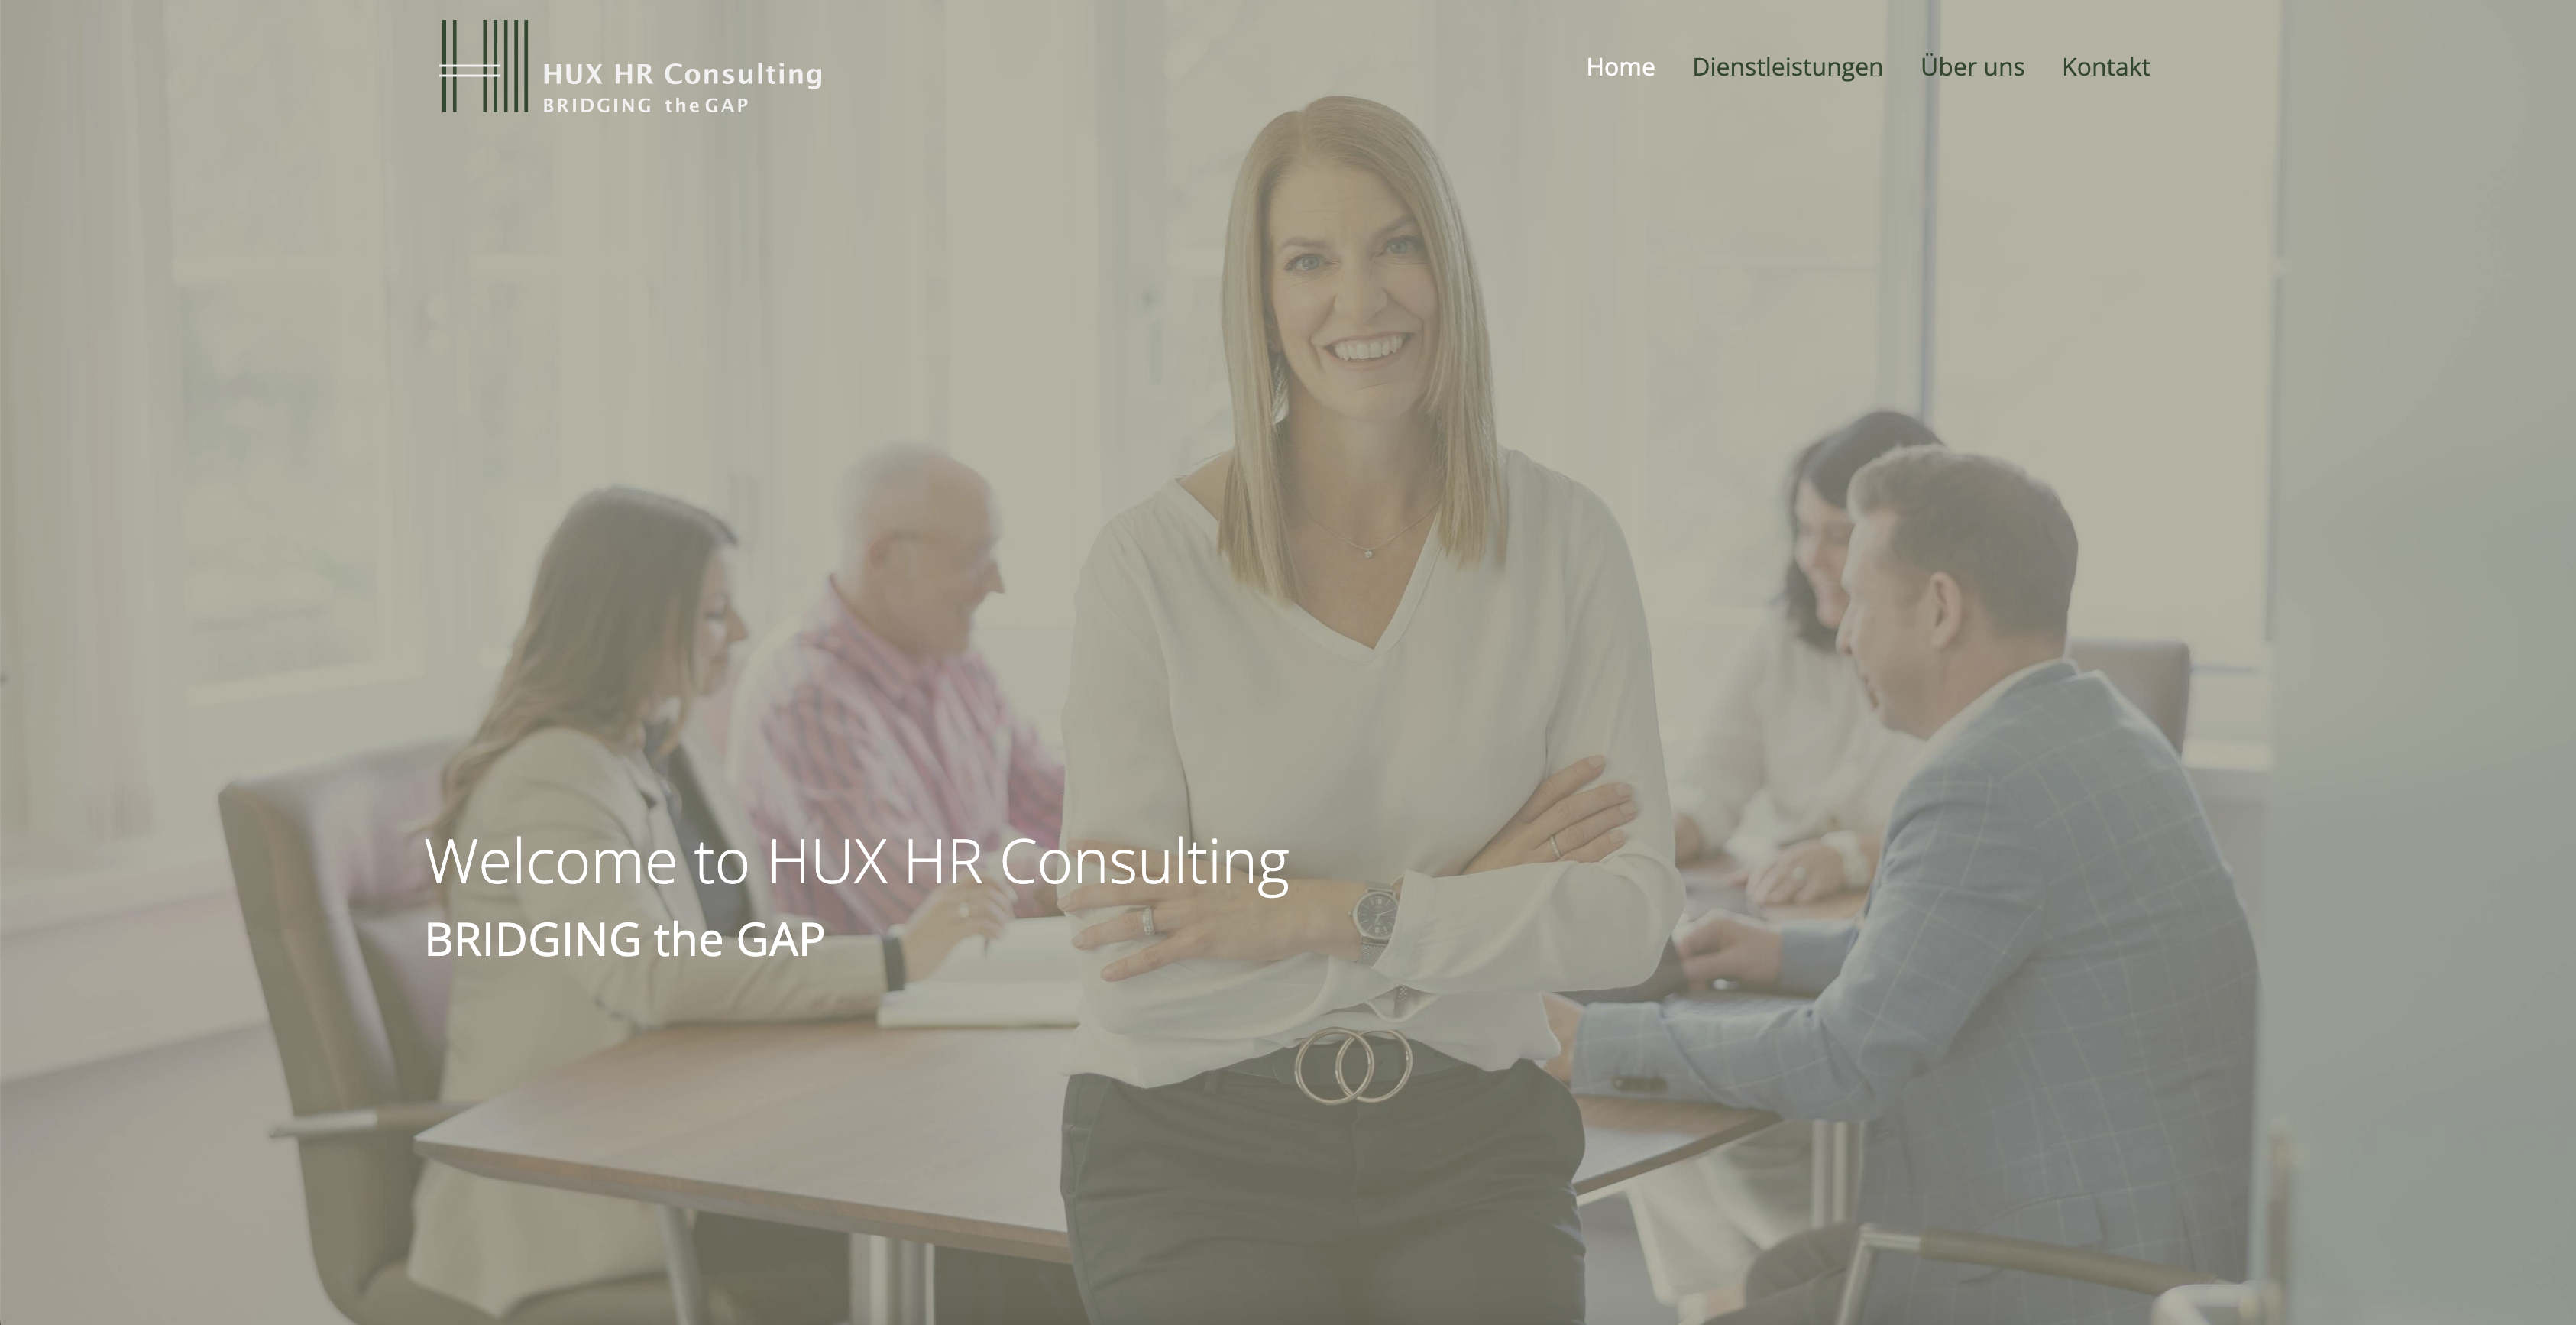 Webdesign für HR Consulting Unternehmen